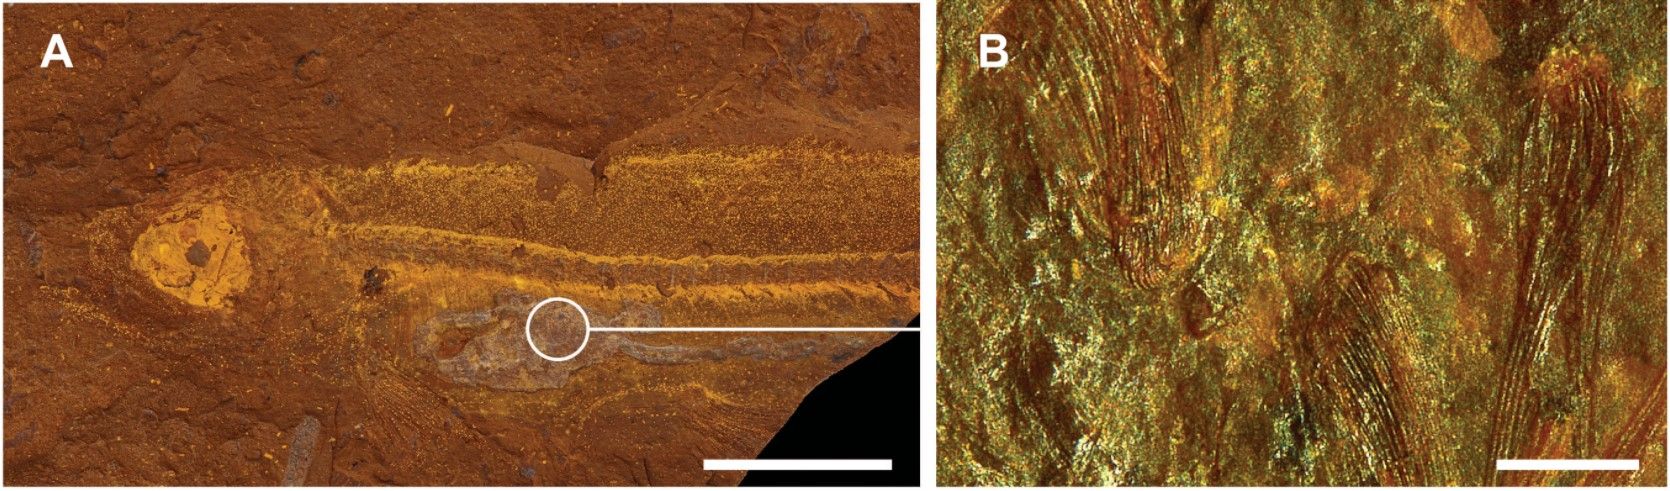 Australské Lagerstätte otevírá své tafonomické okno do miocénu